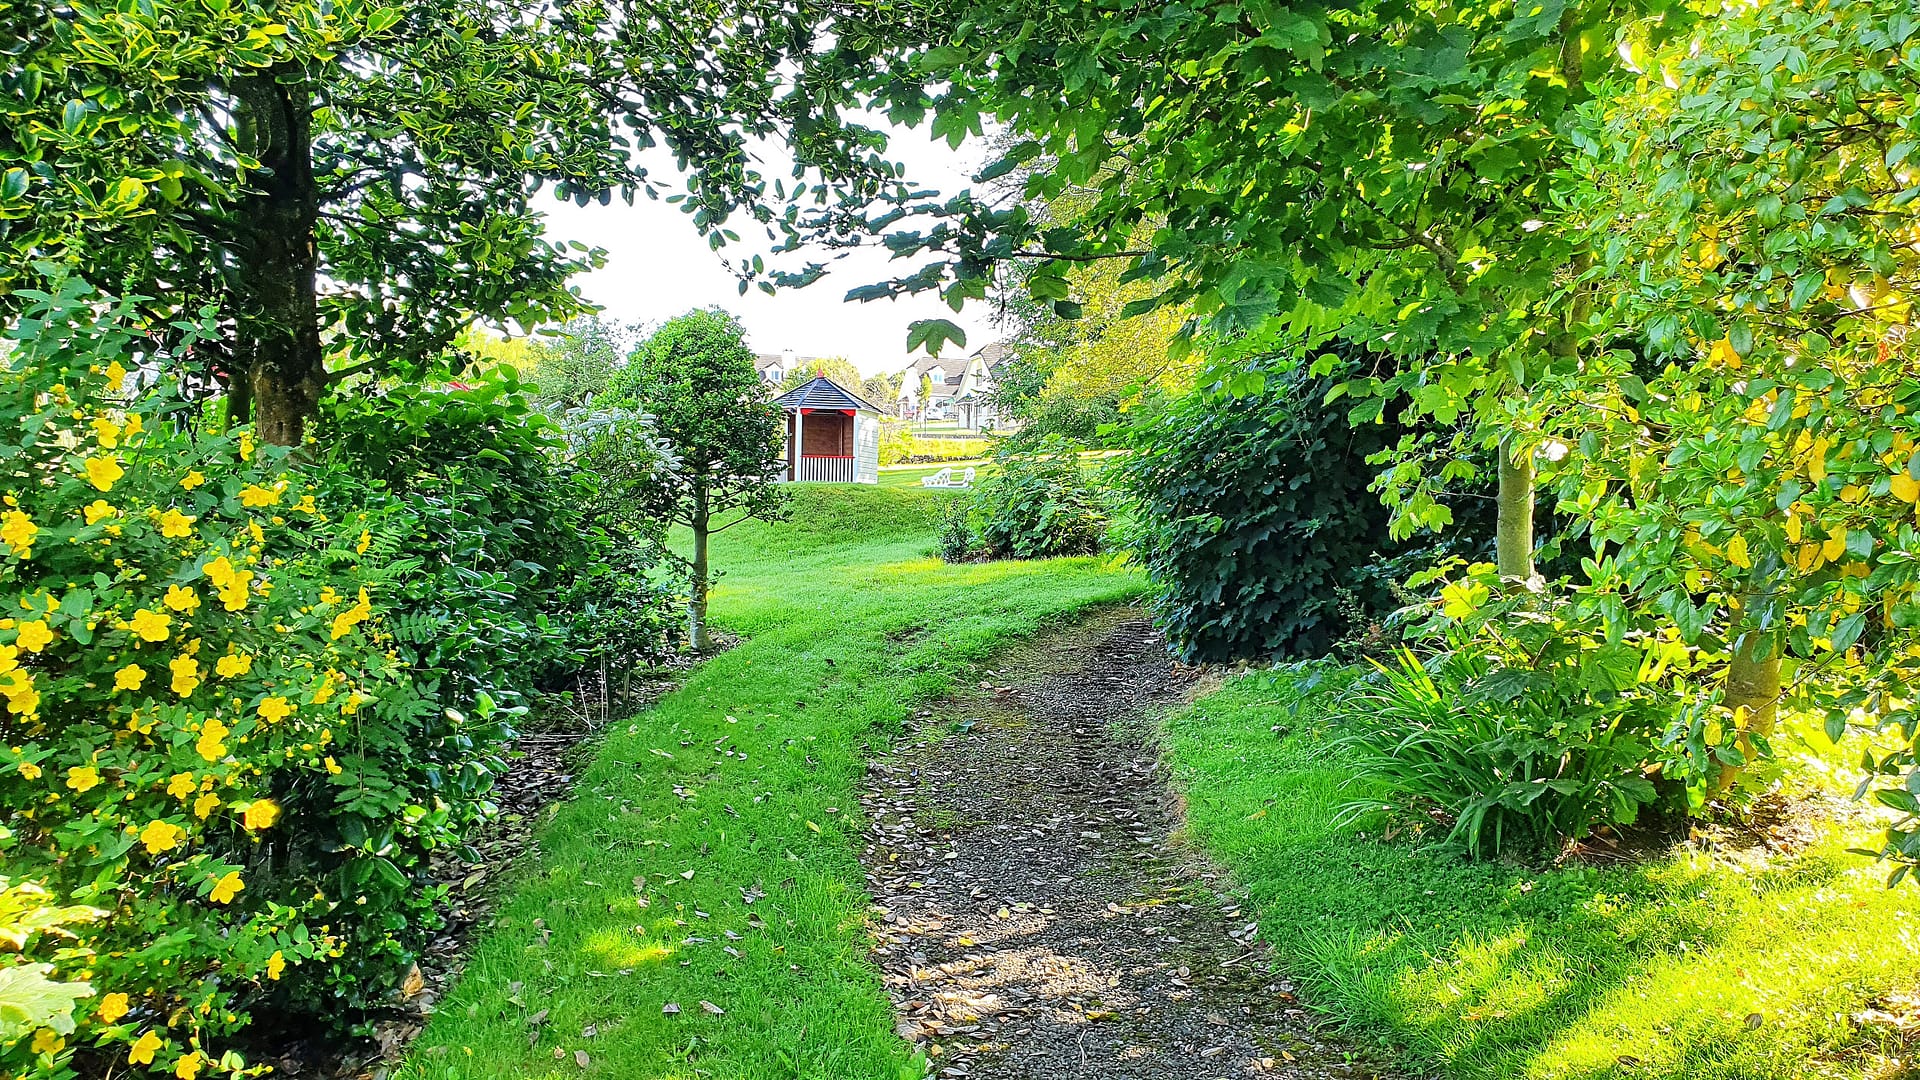 A pathway through the garden.